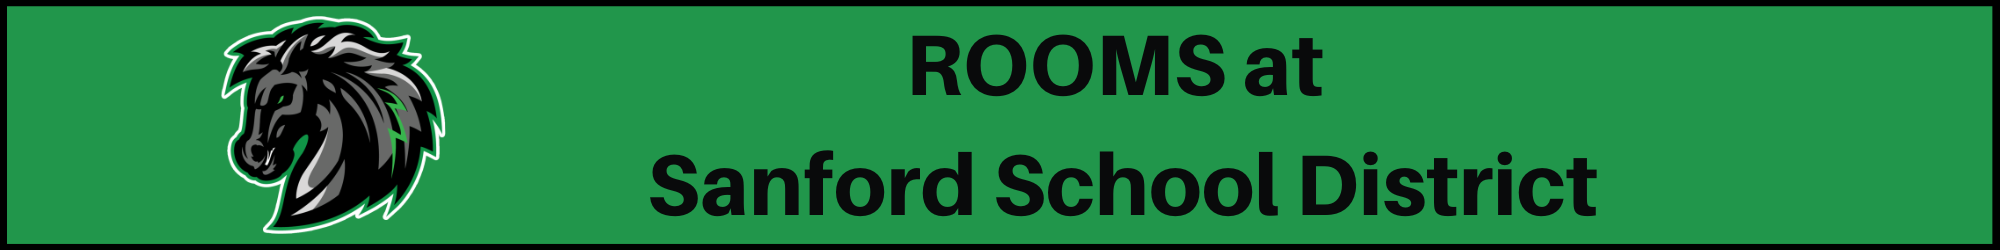 Rooms at Sanford